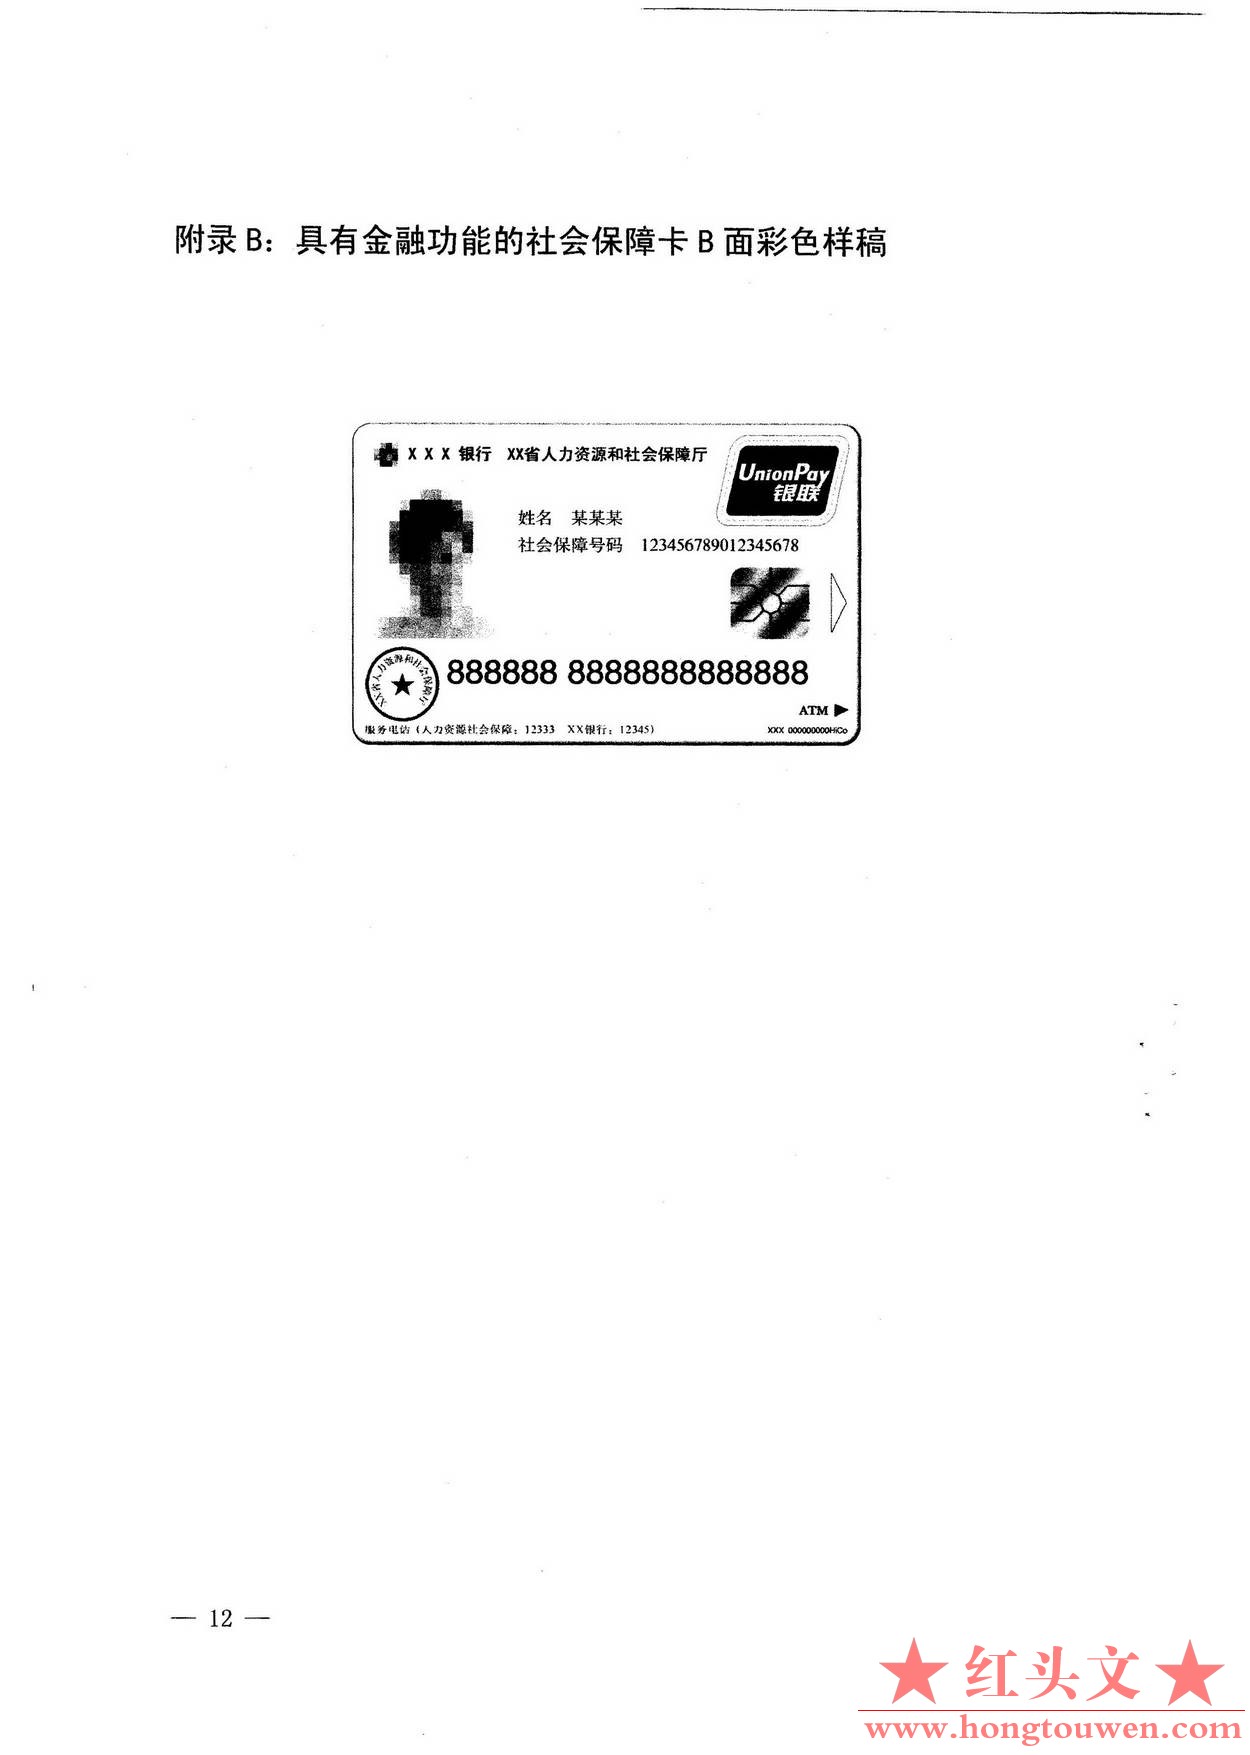 银发[2010]348号-关于社会保障卡银行业务应用有关事宜的通知_页面_12.jpg.jpg